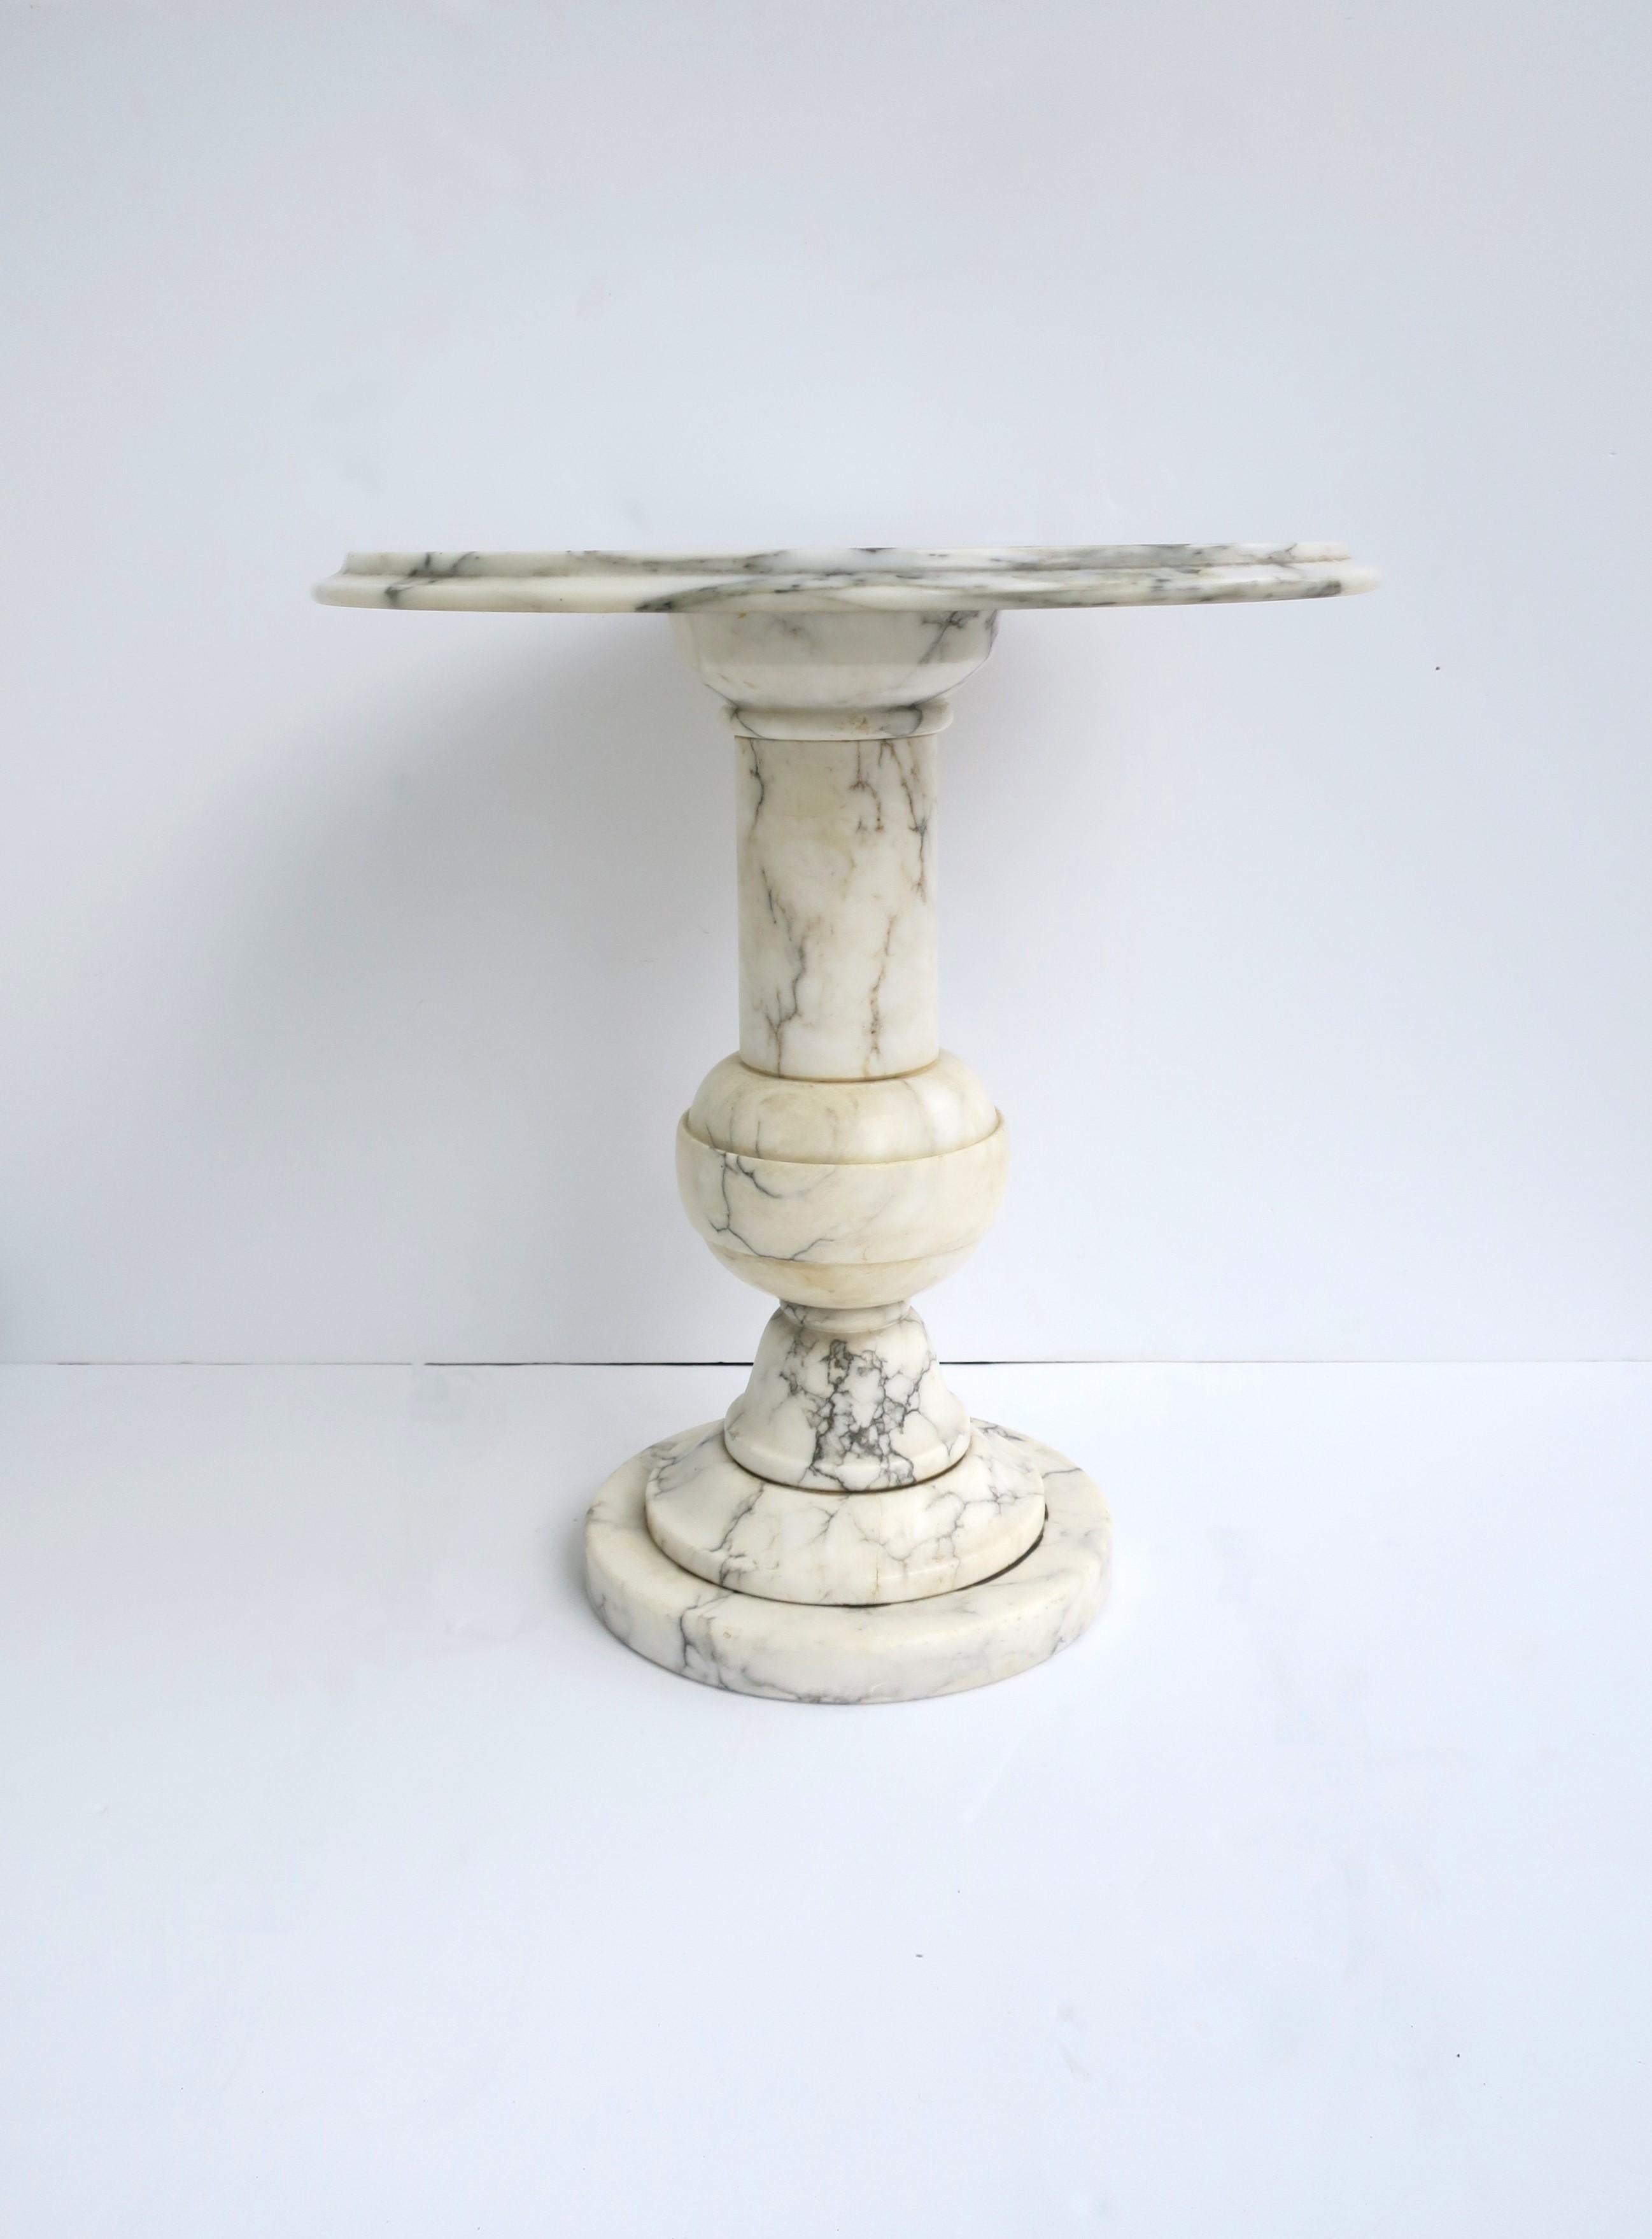 Importante table ronde italienne en marbre, vers le milieu du 20e siècle, Italie. Le marbre est principalement blanc avec des veines noires et grises. Une table idéale pour les boissons, les cocktails, etc. Dimensions : 18